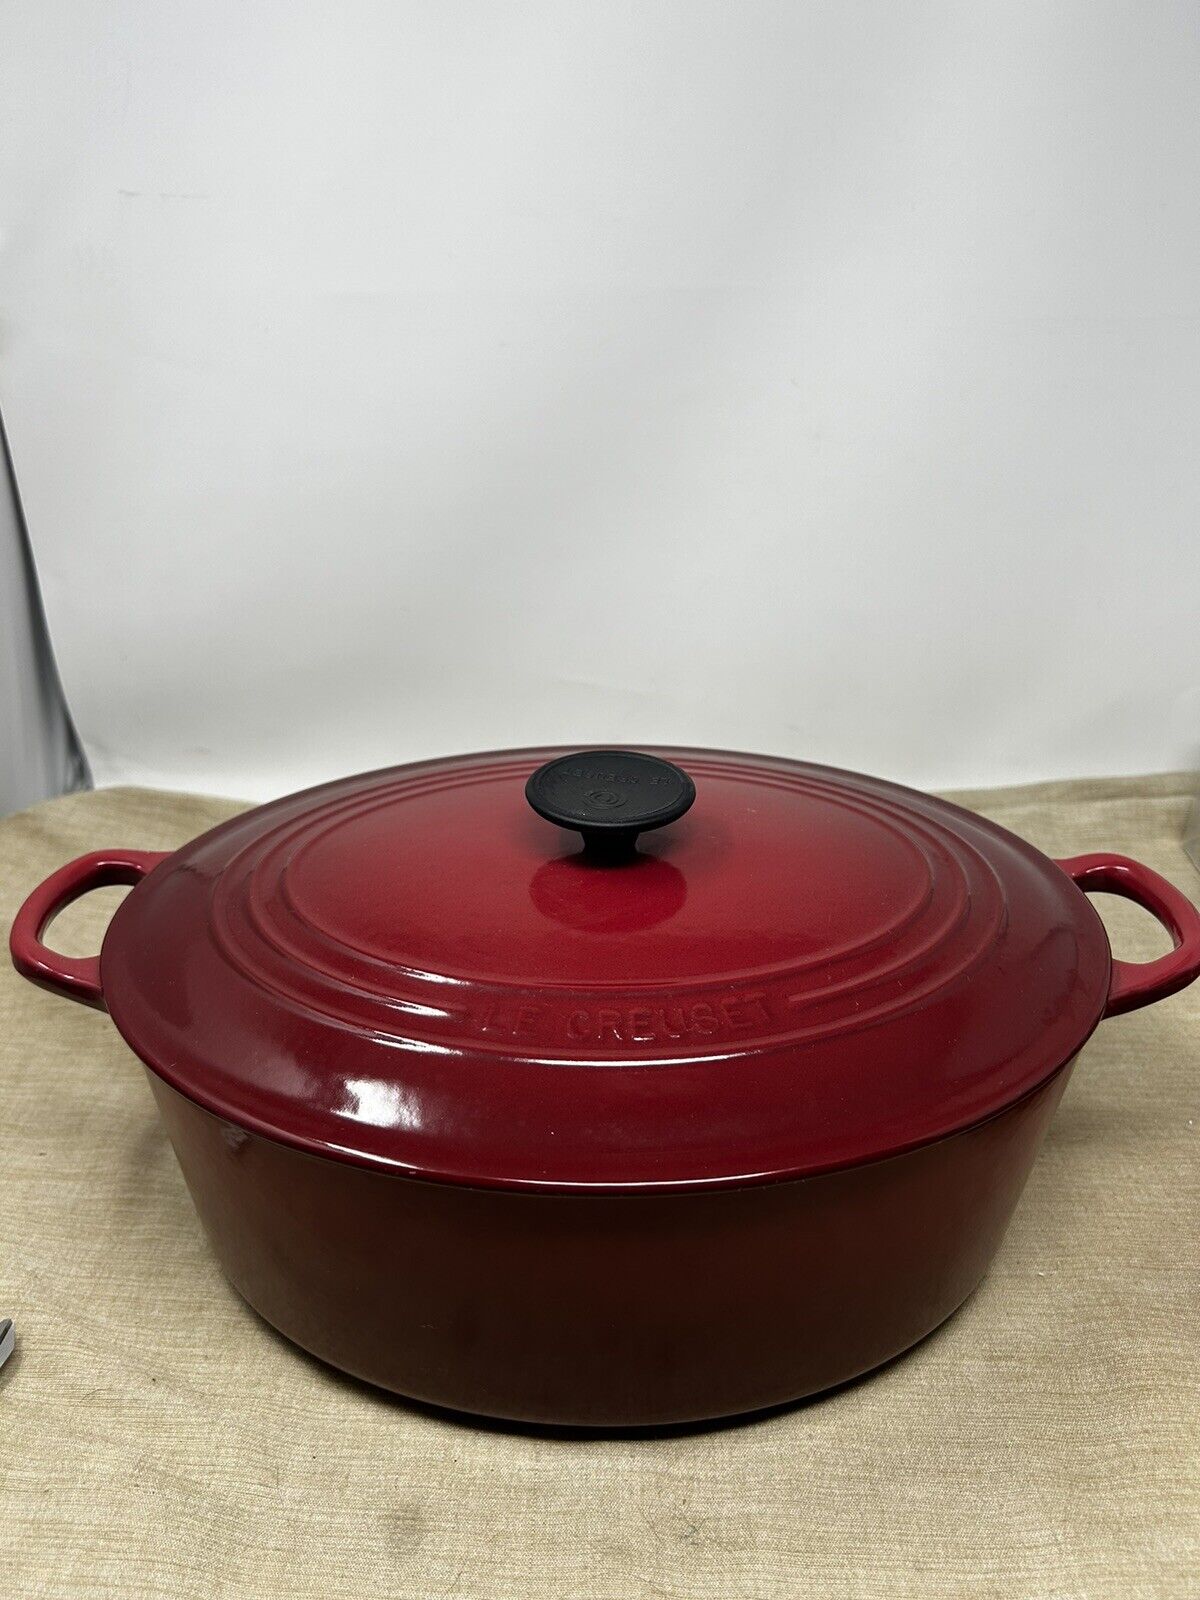 Le Creuset #31 Burgundy Red Enamel Cast Iron Oval Dutch Oven Pot 6.75 qt